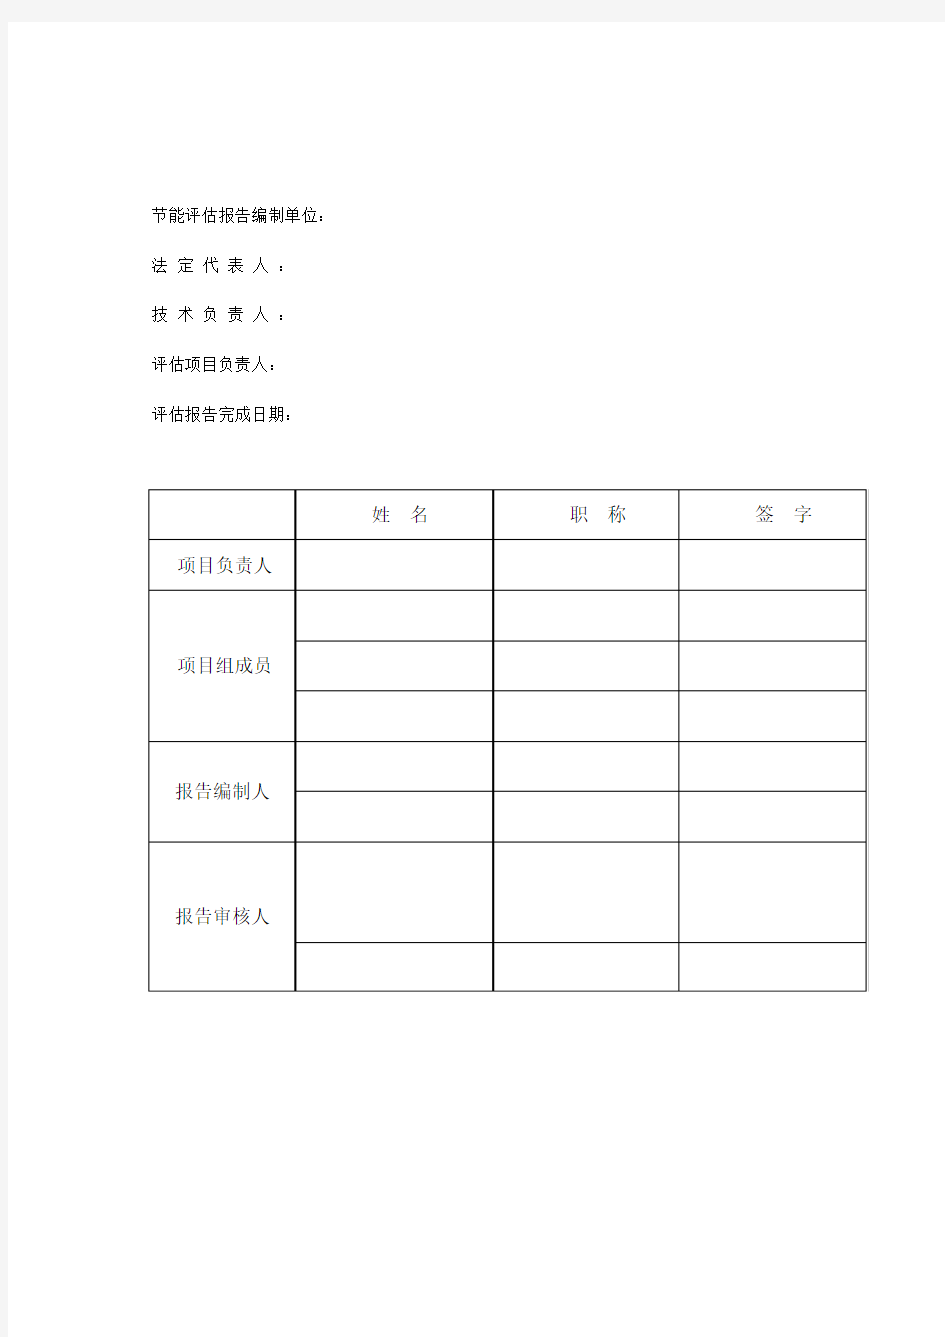 江苏省苏州市公共建筑节能评估报告书编制格式与深度(菜单)